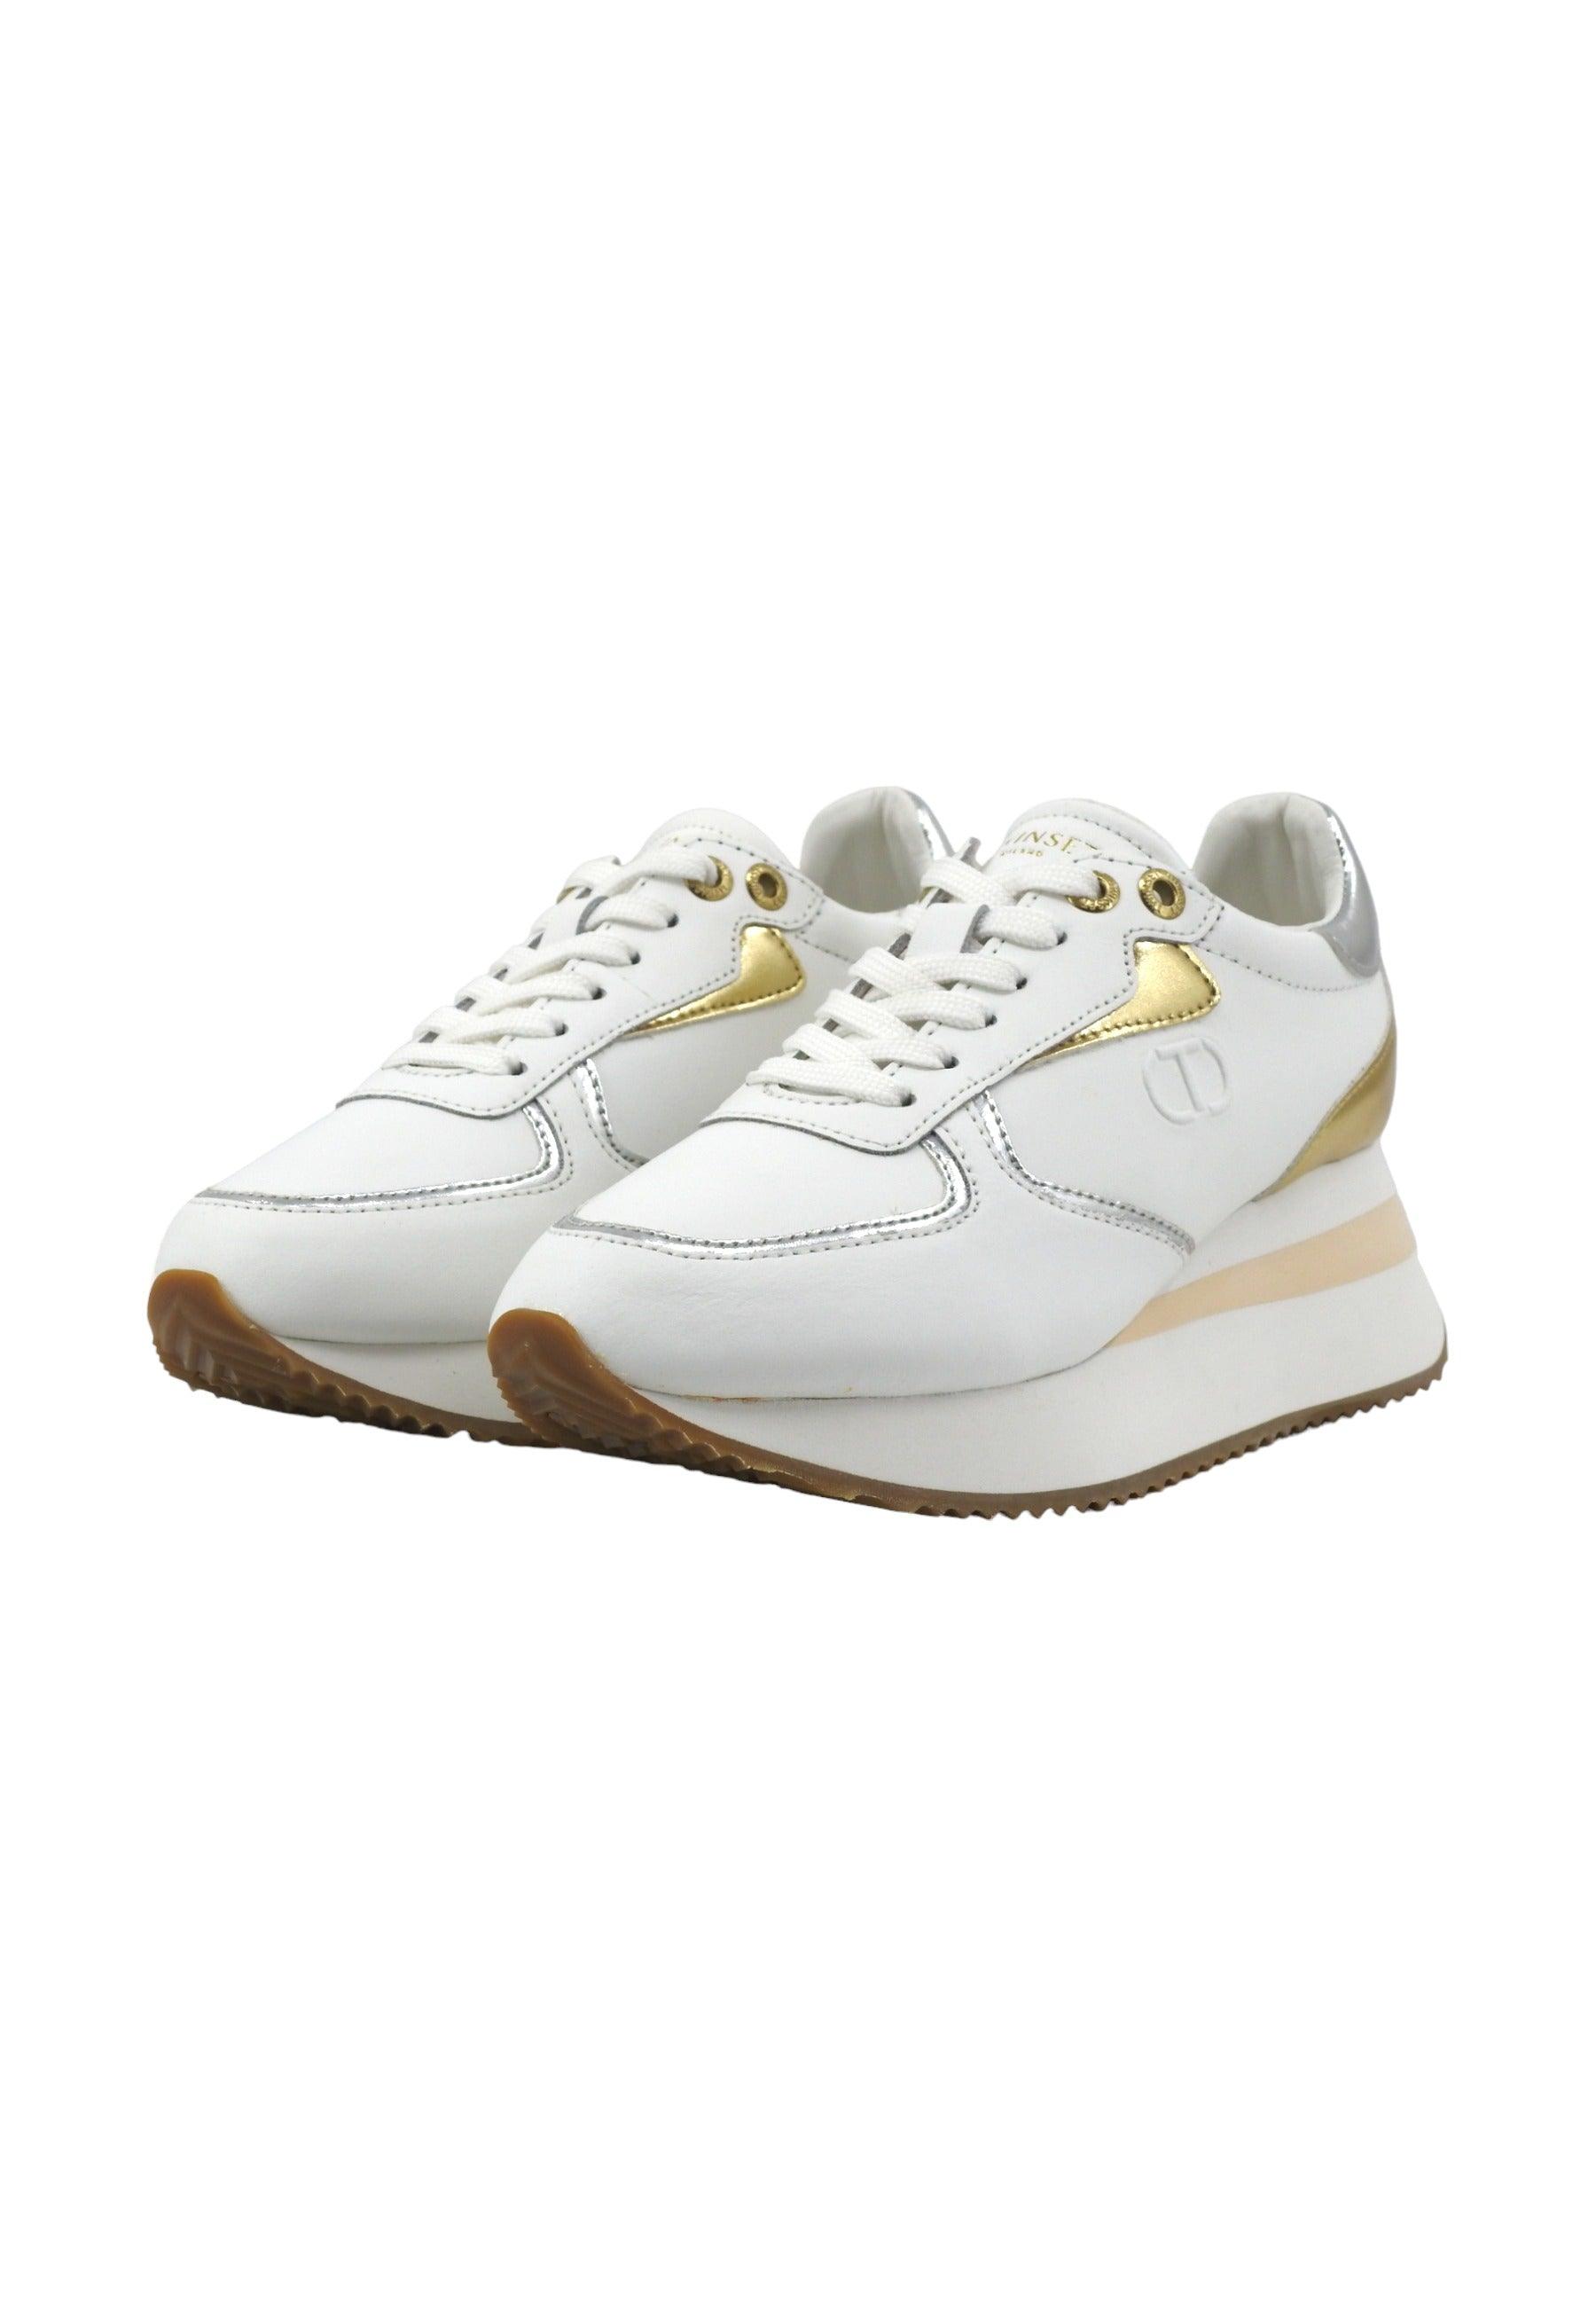 TWINSET Sneaker Donna Platform Multi Bianco Ottico Gold Silver 241TC080 - Sandrini Calzature e Abbigliamento